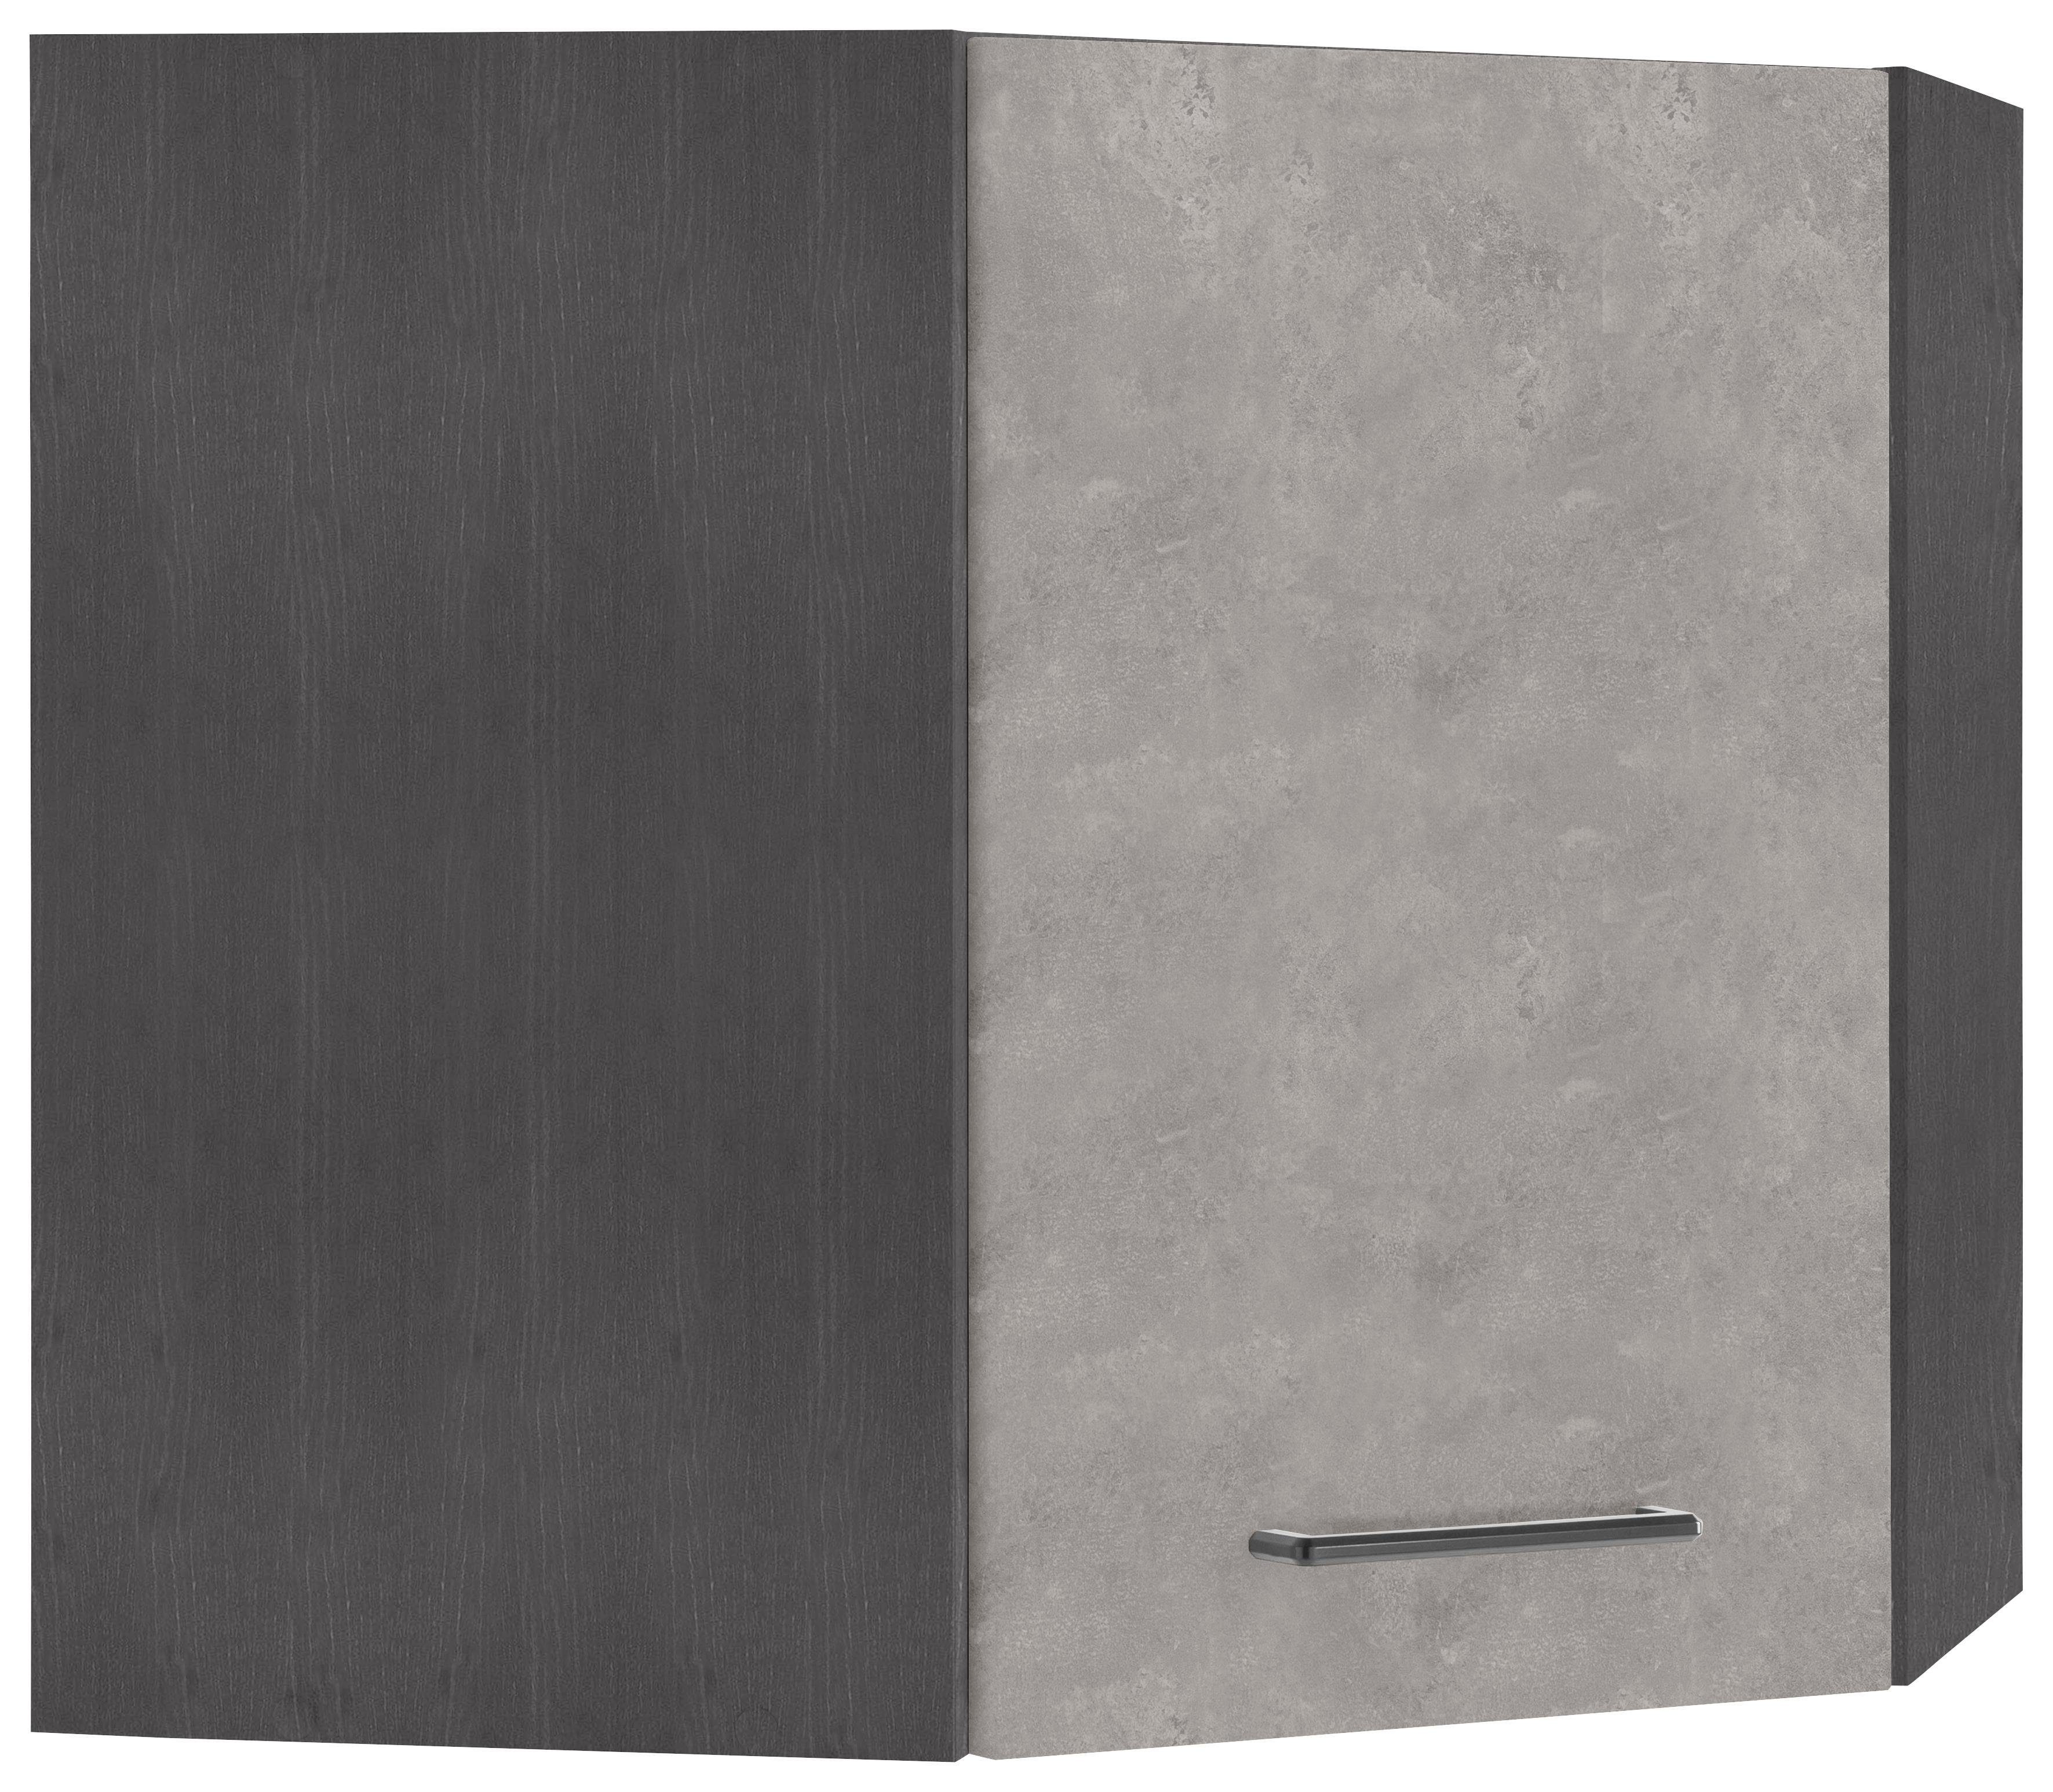 HELD MÖBEL Eckhängeschrank Tulsa 60 cm breit, 1 Tür, schwarzer Metallgriff, hochwertige MDF Front betonfarben hell | grafit | Hängeschränke